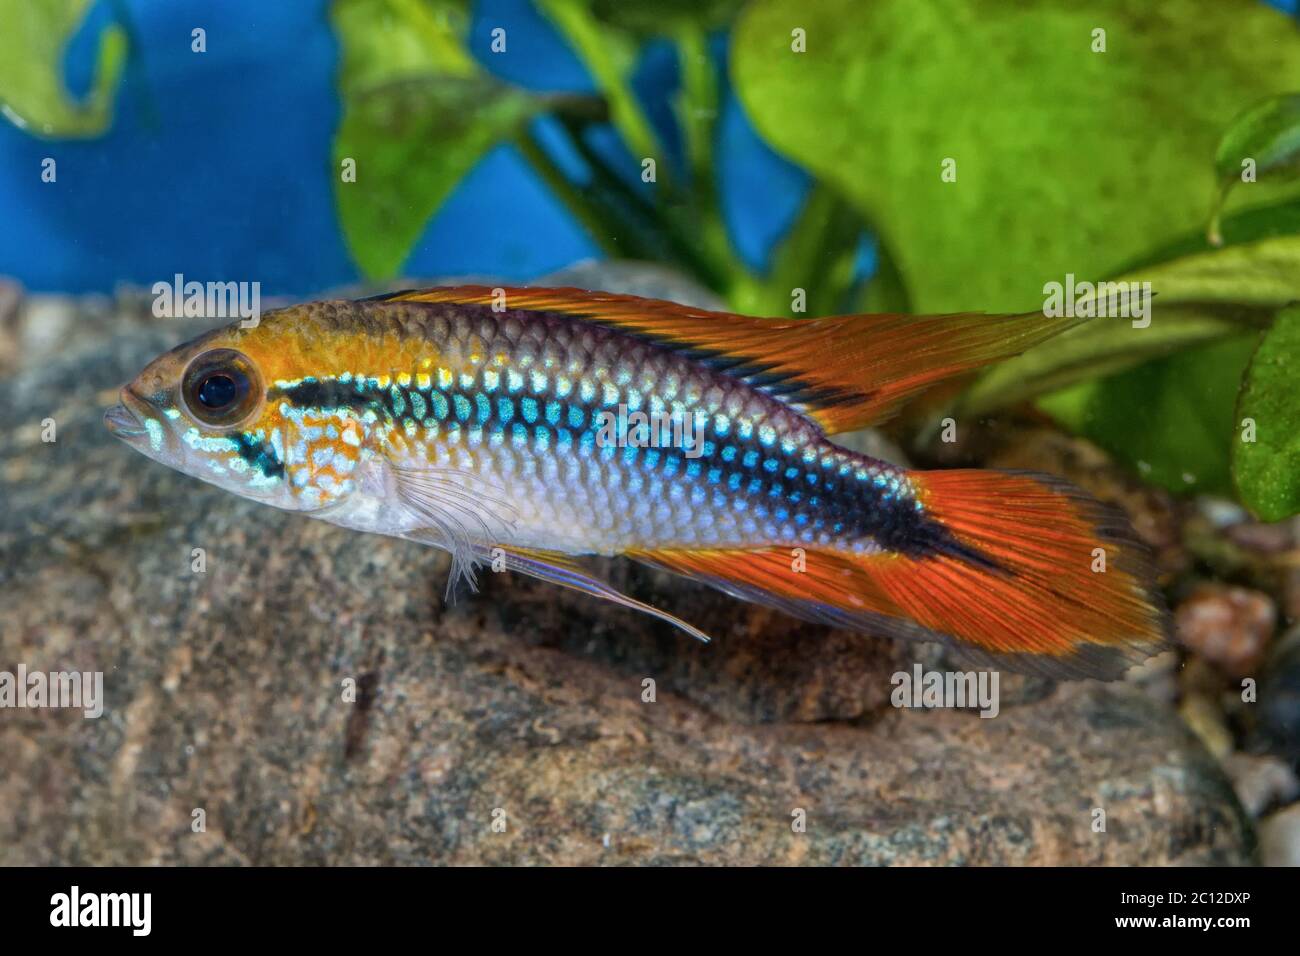 Cichlid fish Apistogramma agassizii in a aquarium Stock Photo